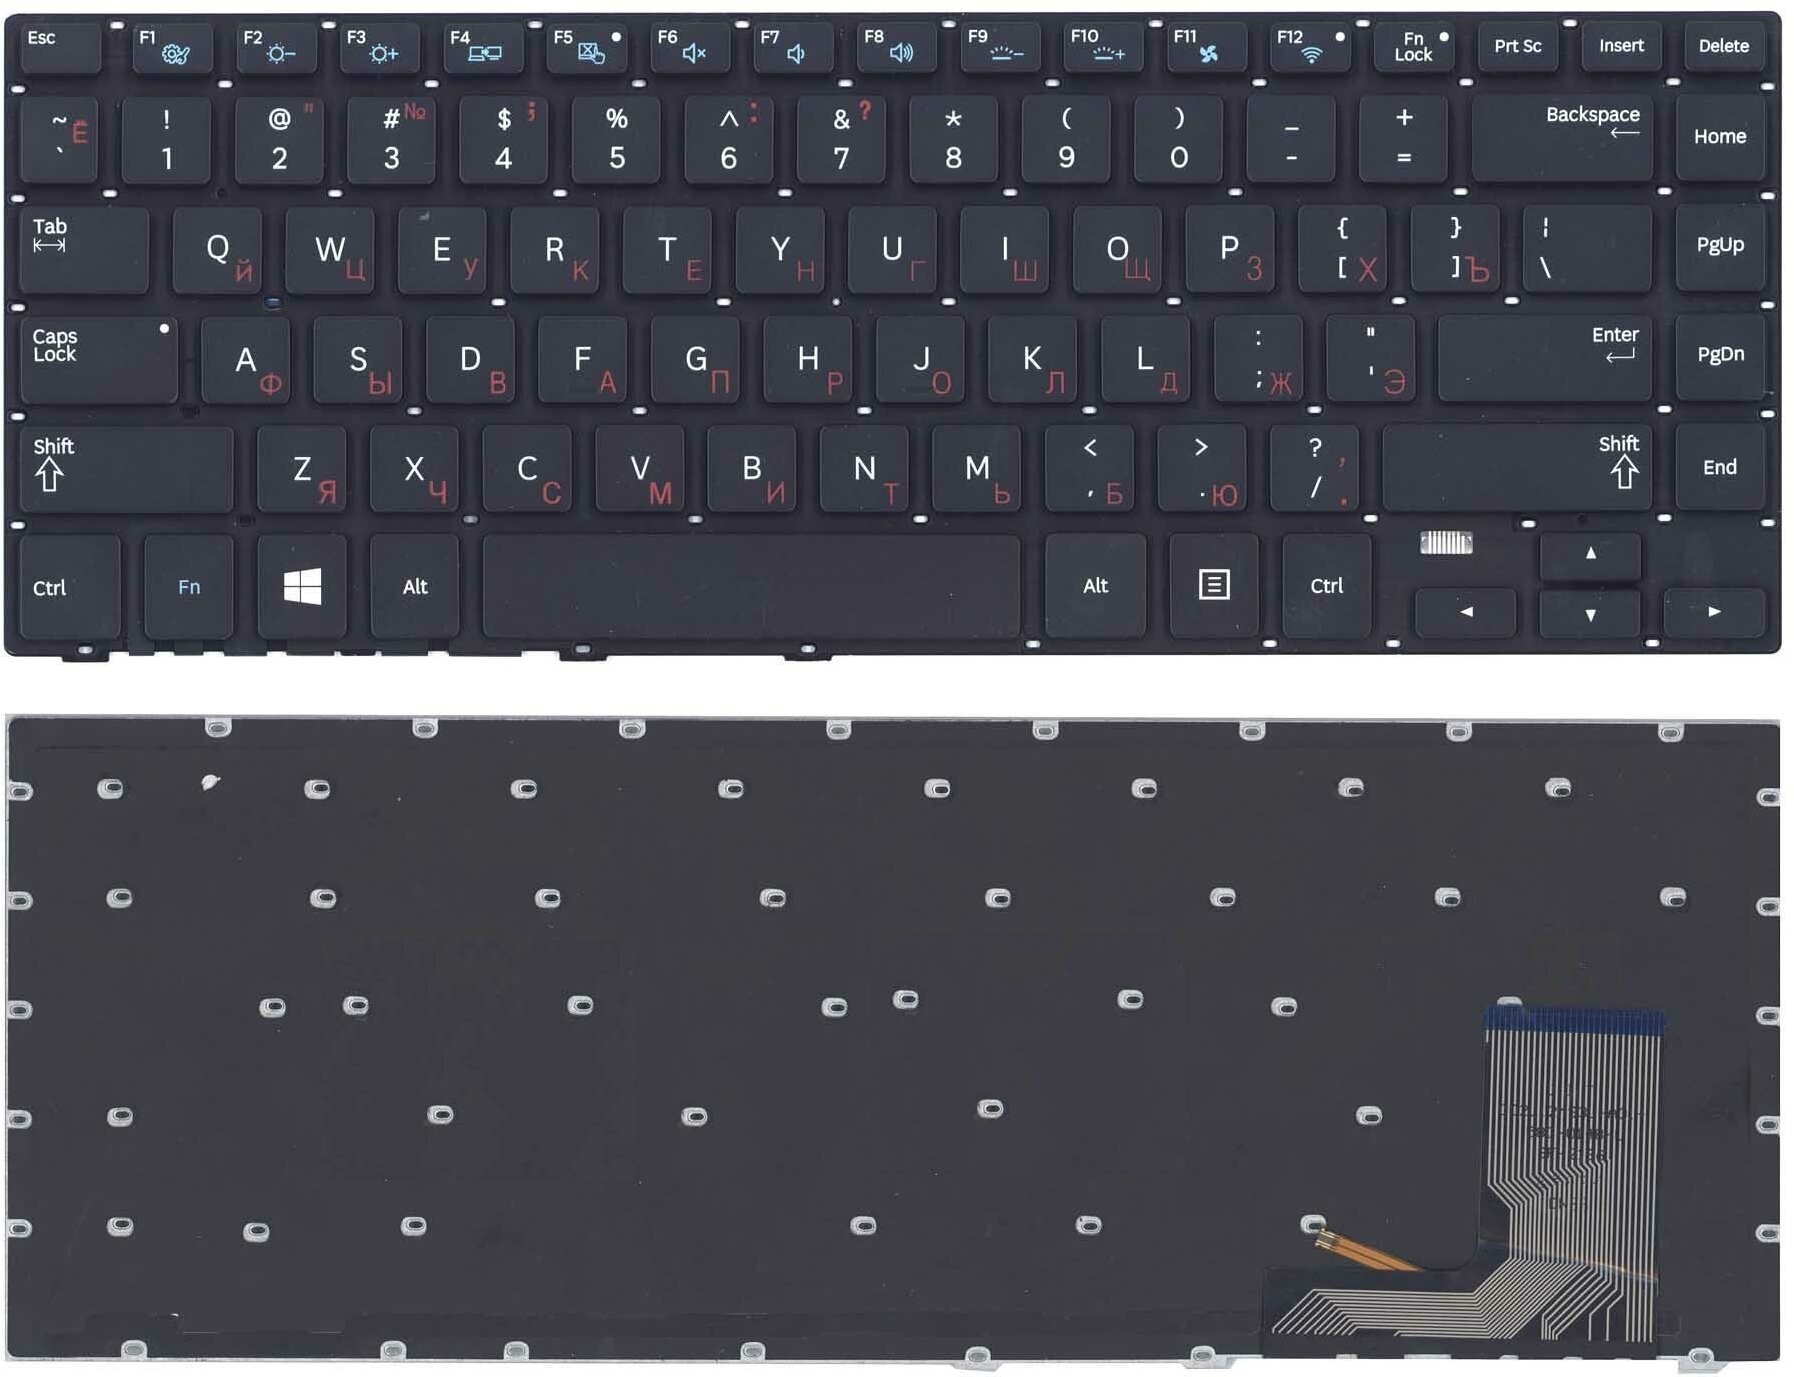 Клавиатура для ноутбука Samsung 470R4E черная с подсветкой